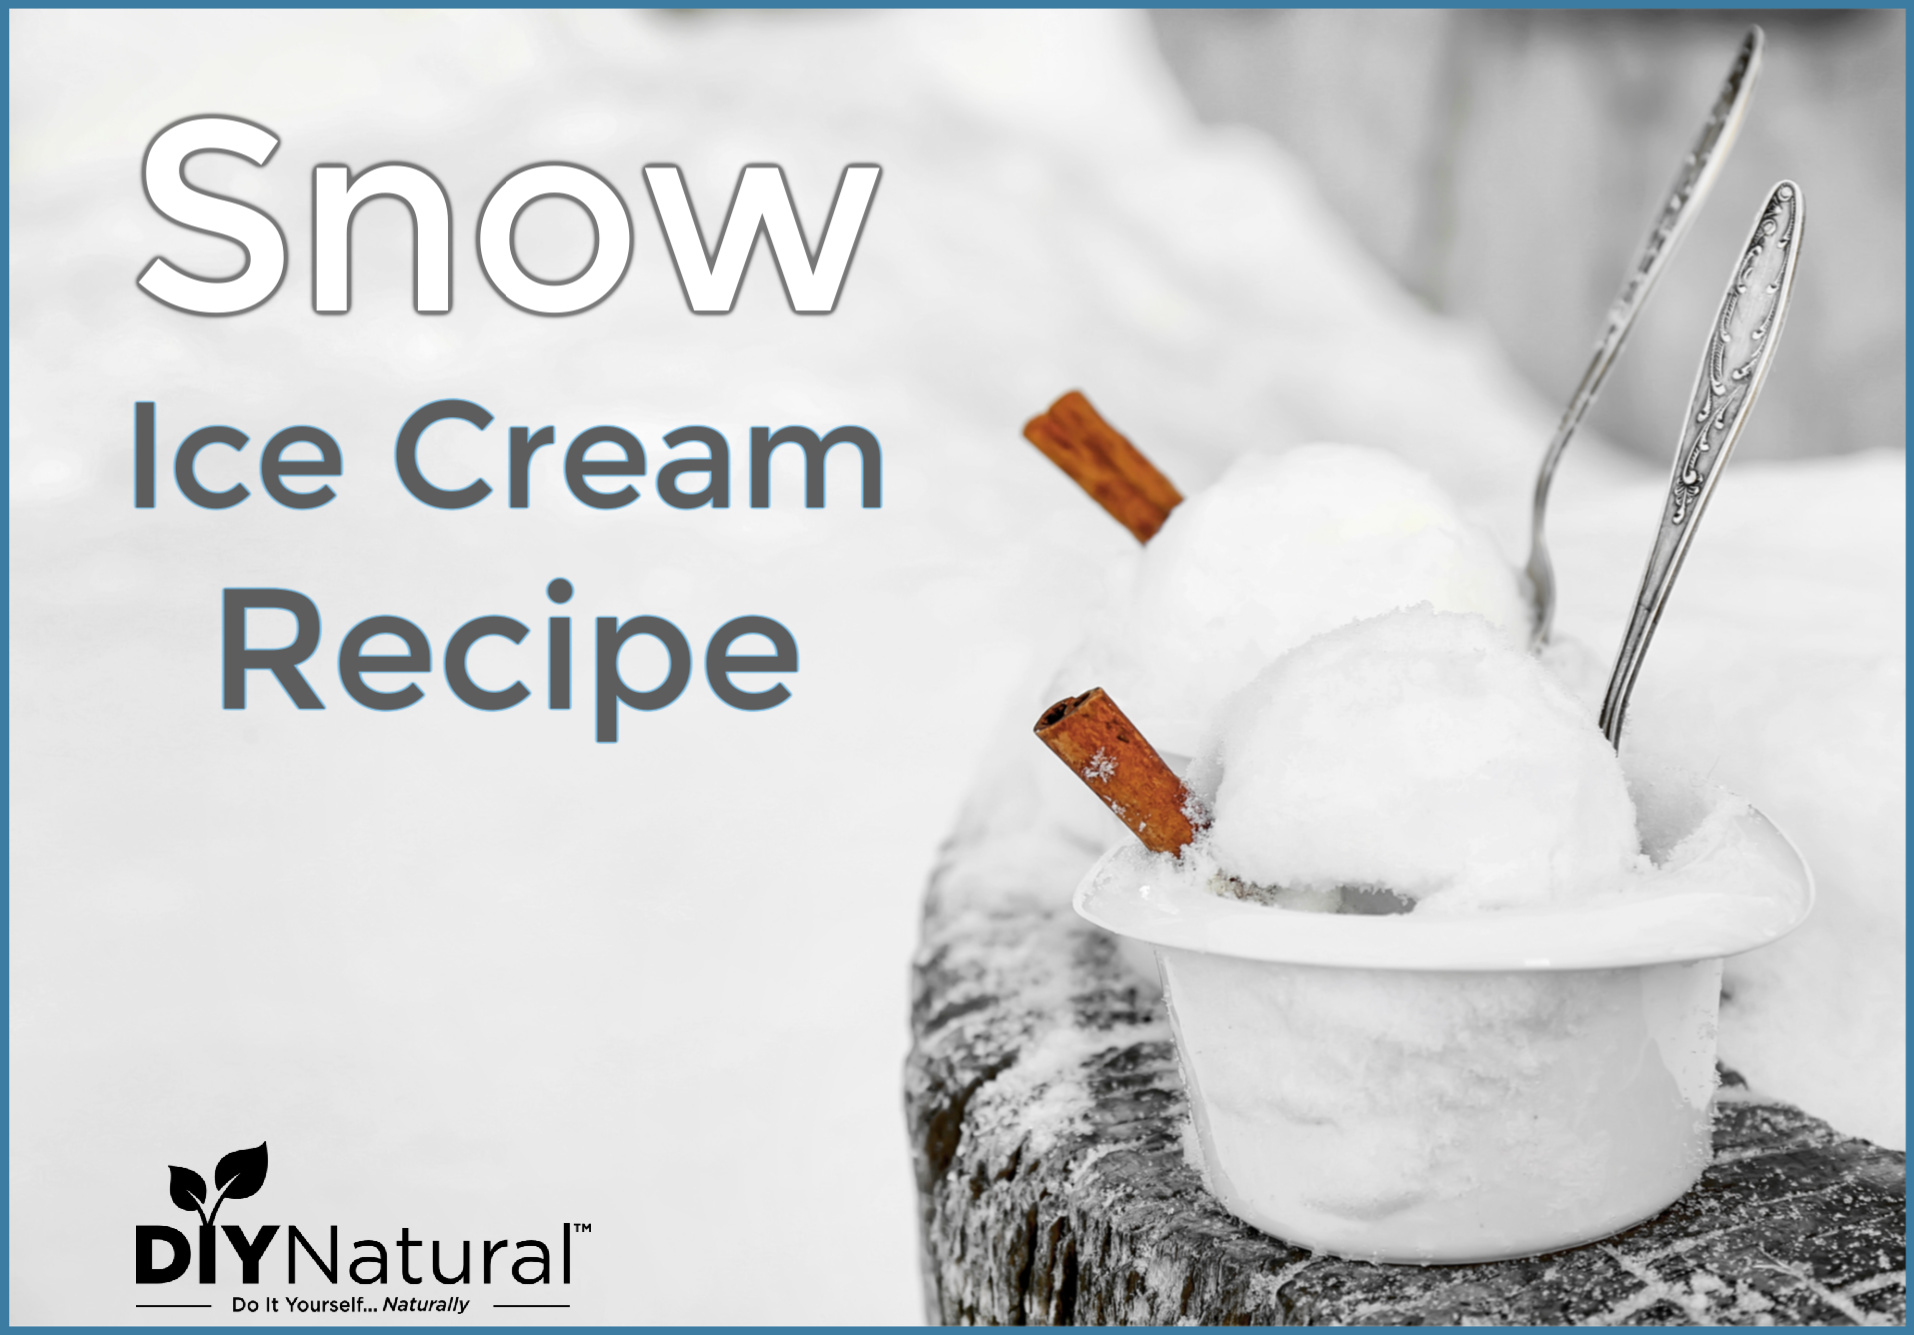 Snow Cream Recipe